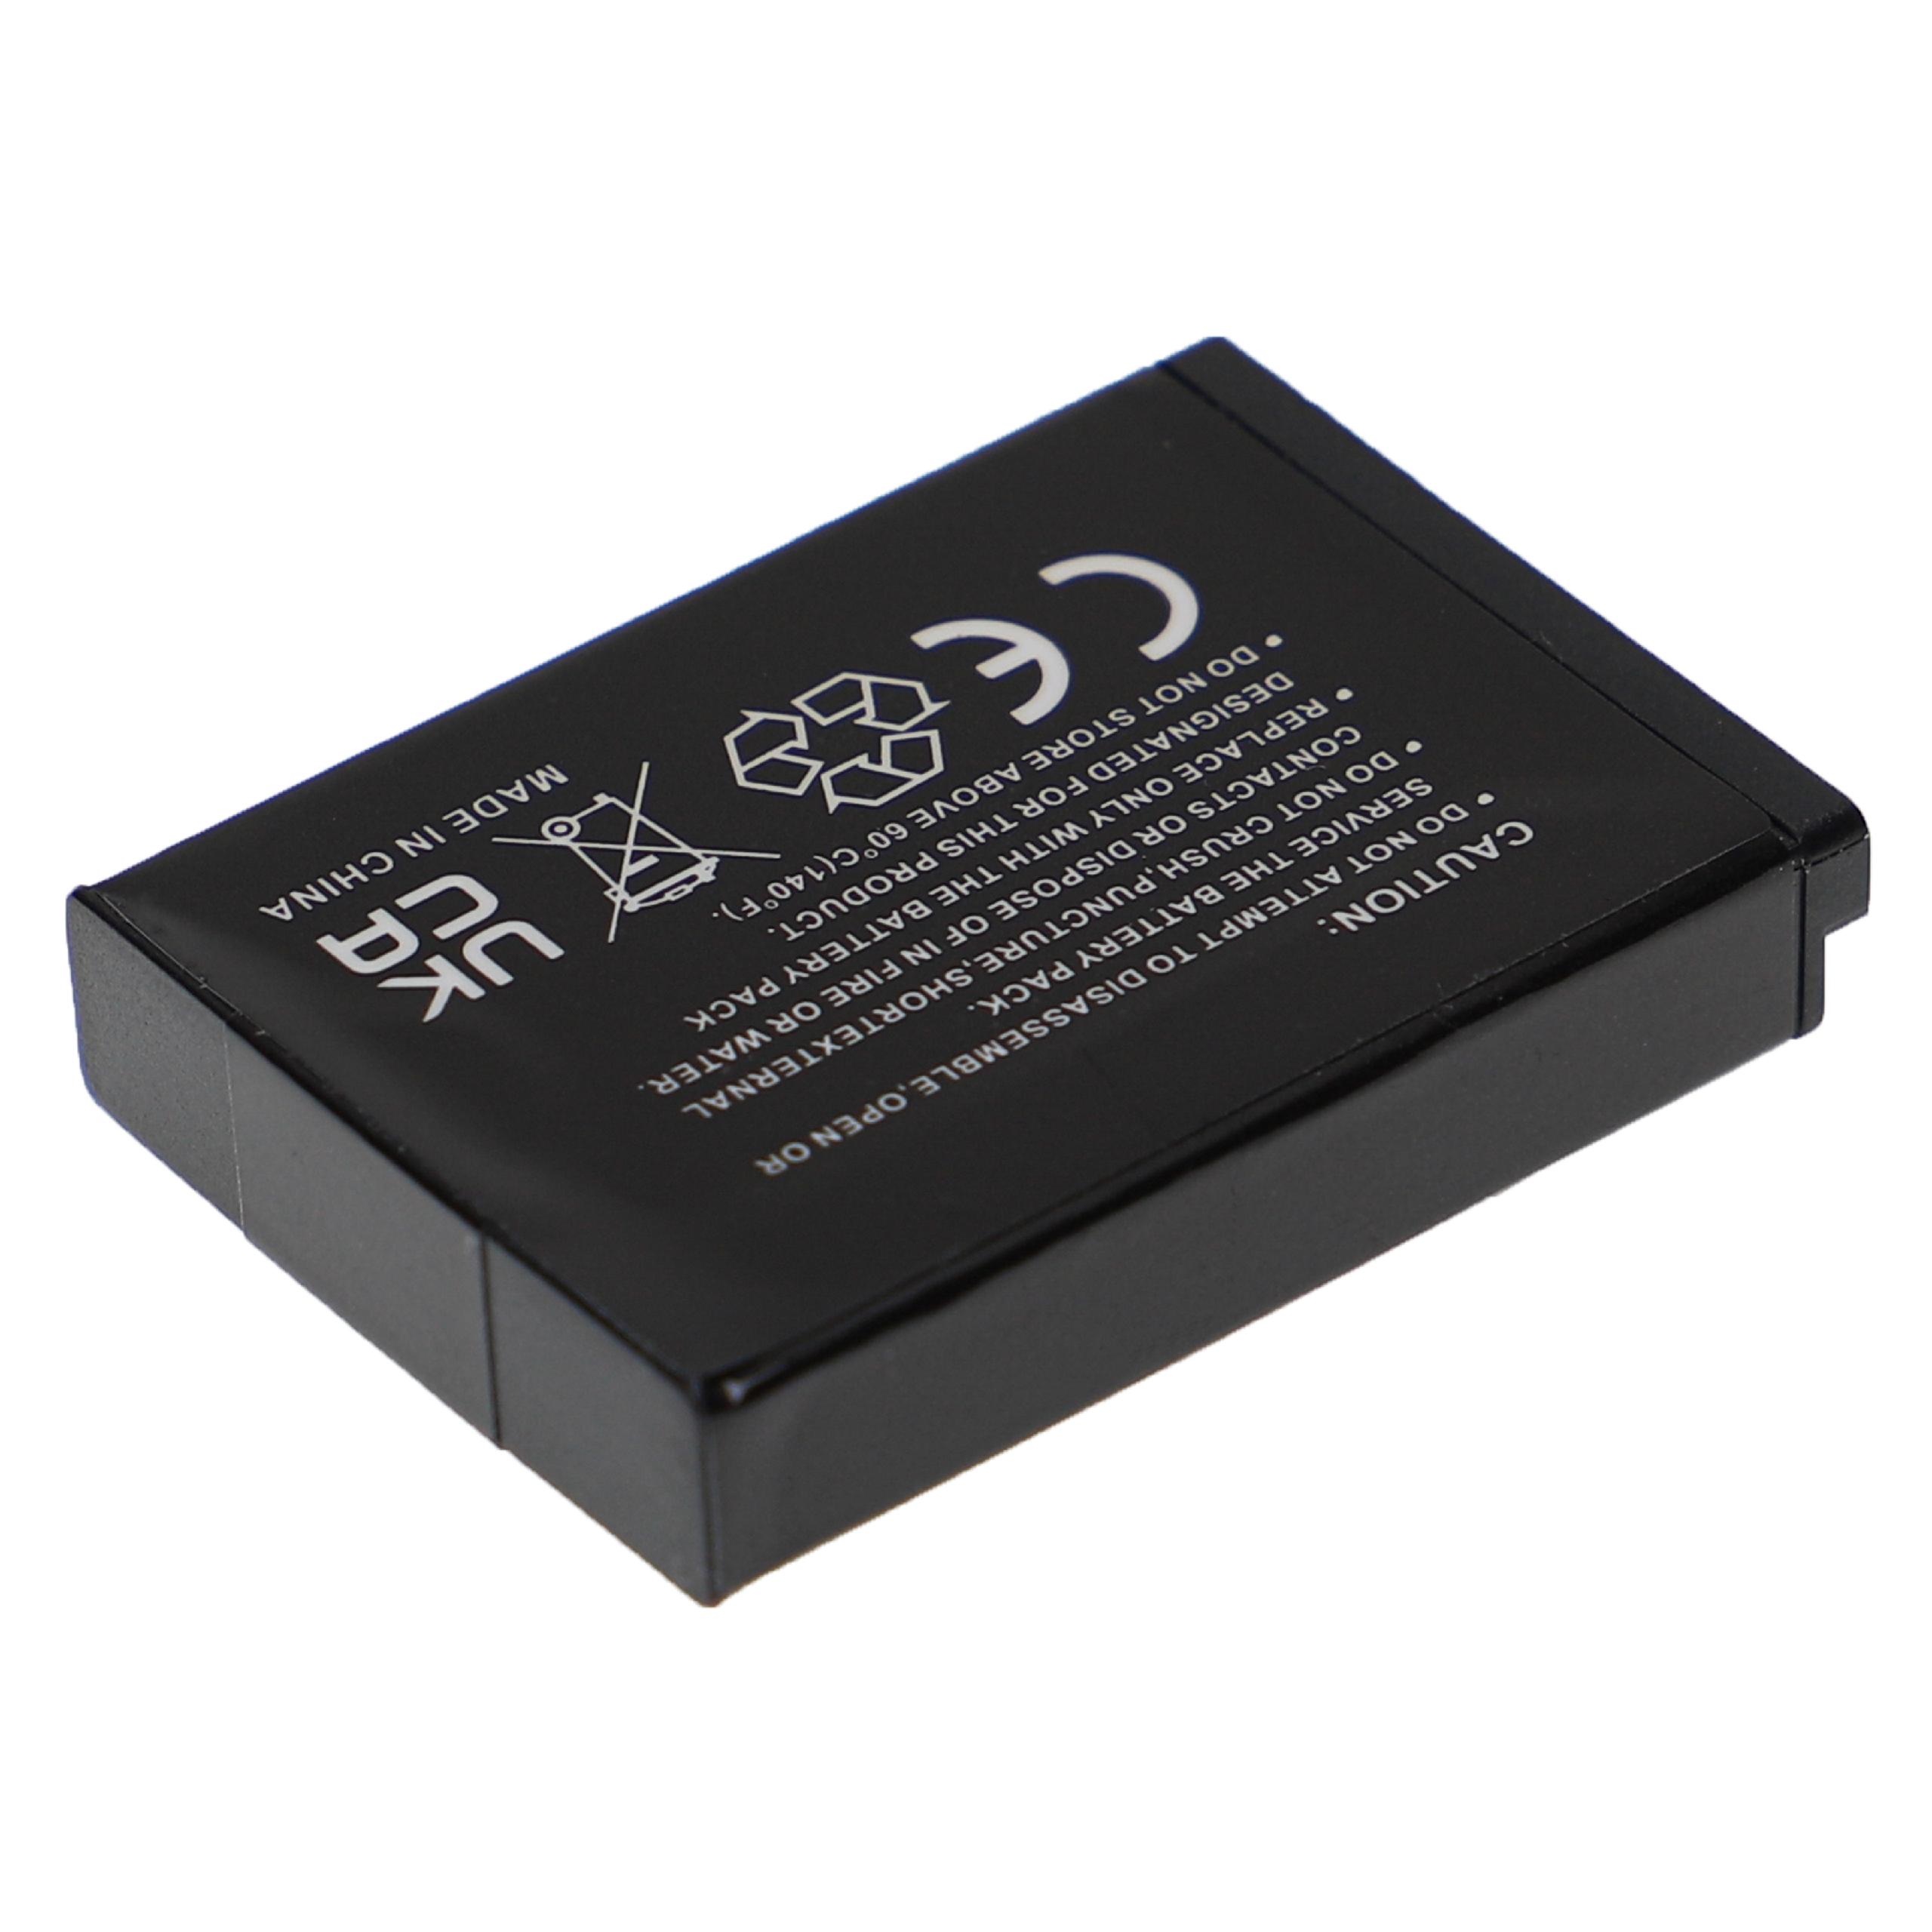 Batteria sostituisce Samsung BP-85a, BP85a, EA-BP85a, IA-BP85a per fotocamera Samsung - 750mAh 3,7V Li-Ion